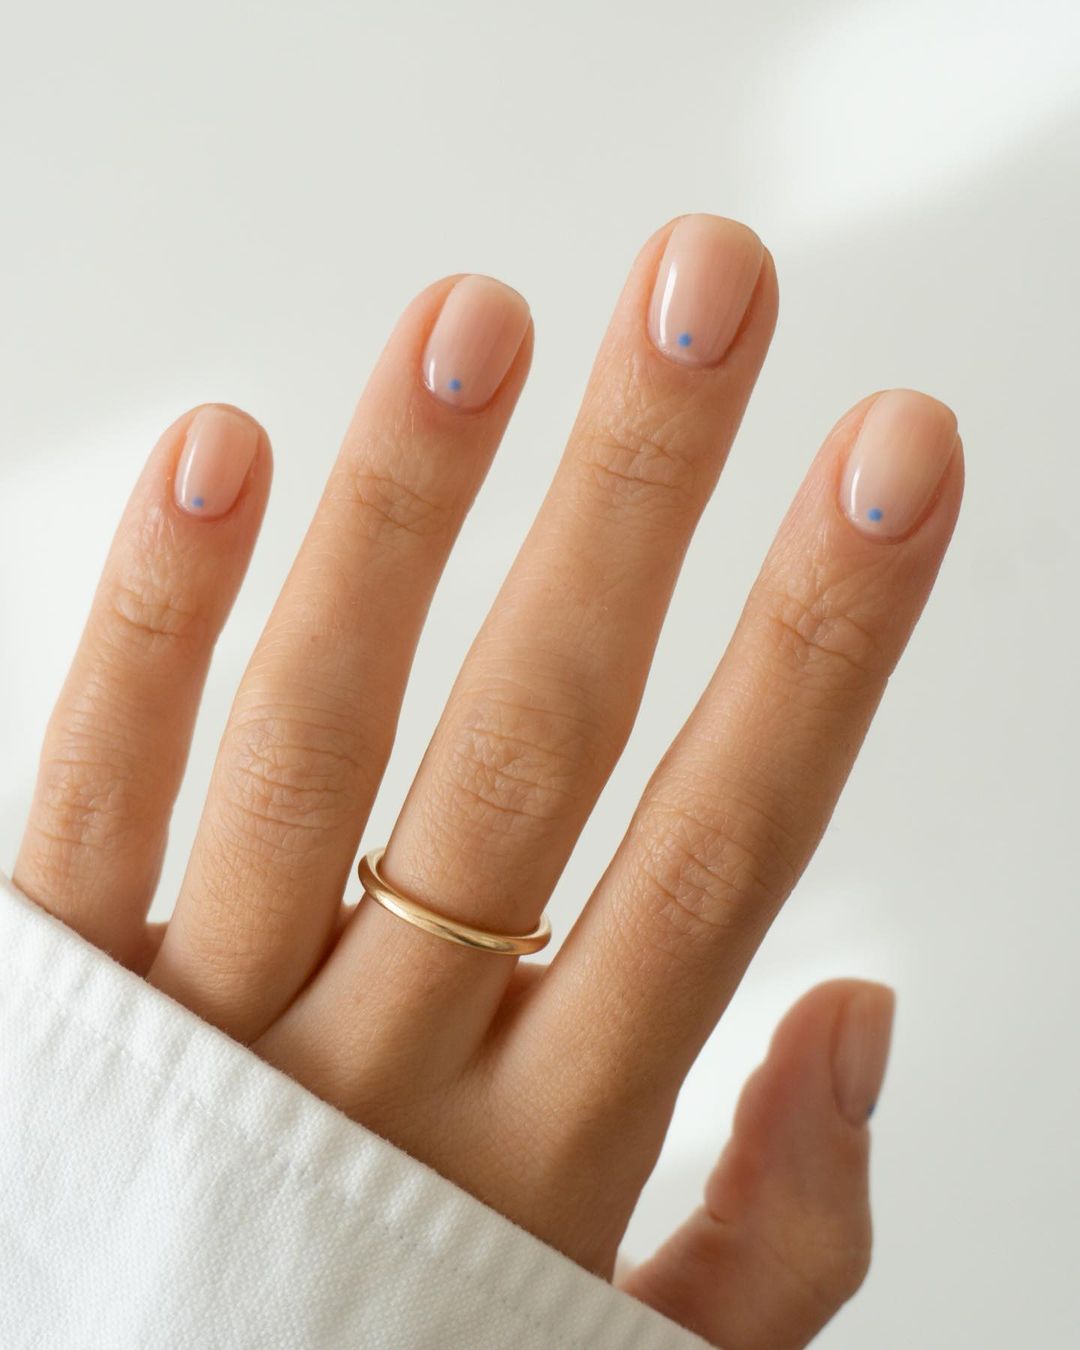 15 Diseños de uñas para las chicas que aman la discreción  Manicura de uñas  Kit de manicura Uñas elegantes y sencillas